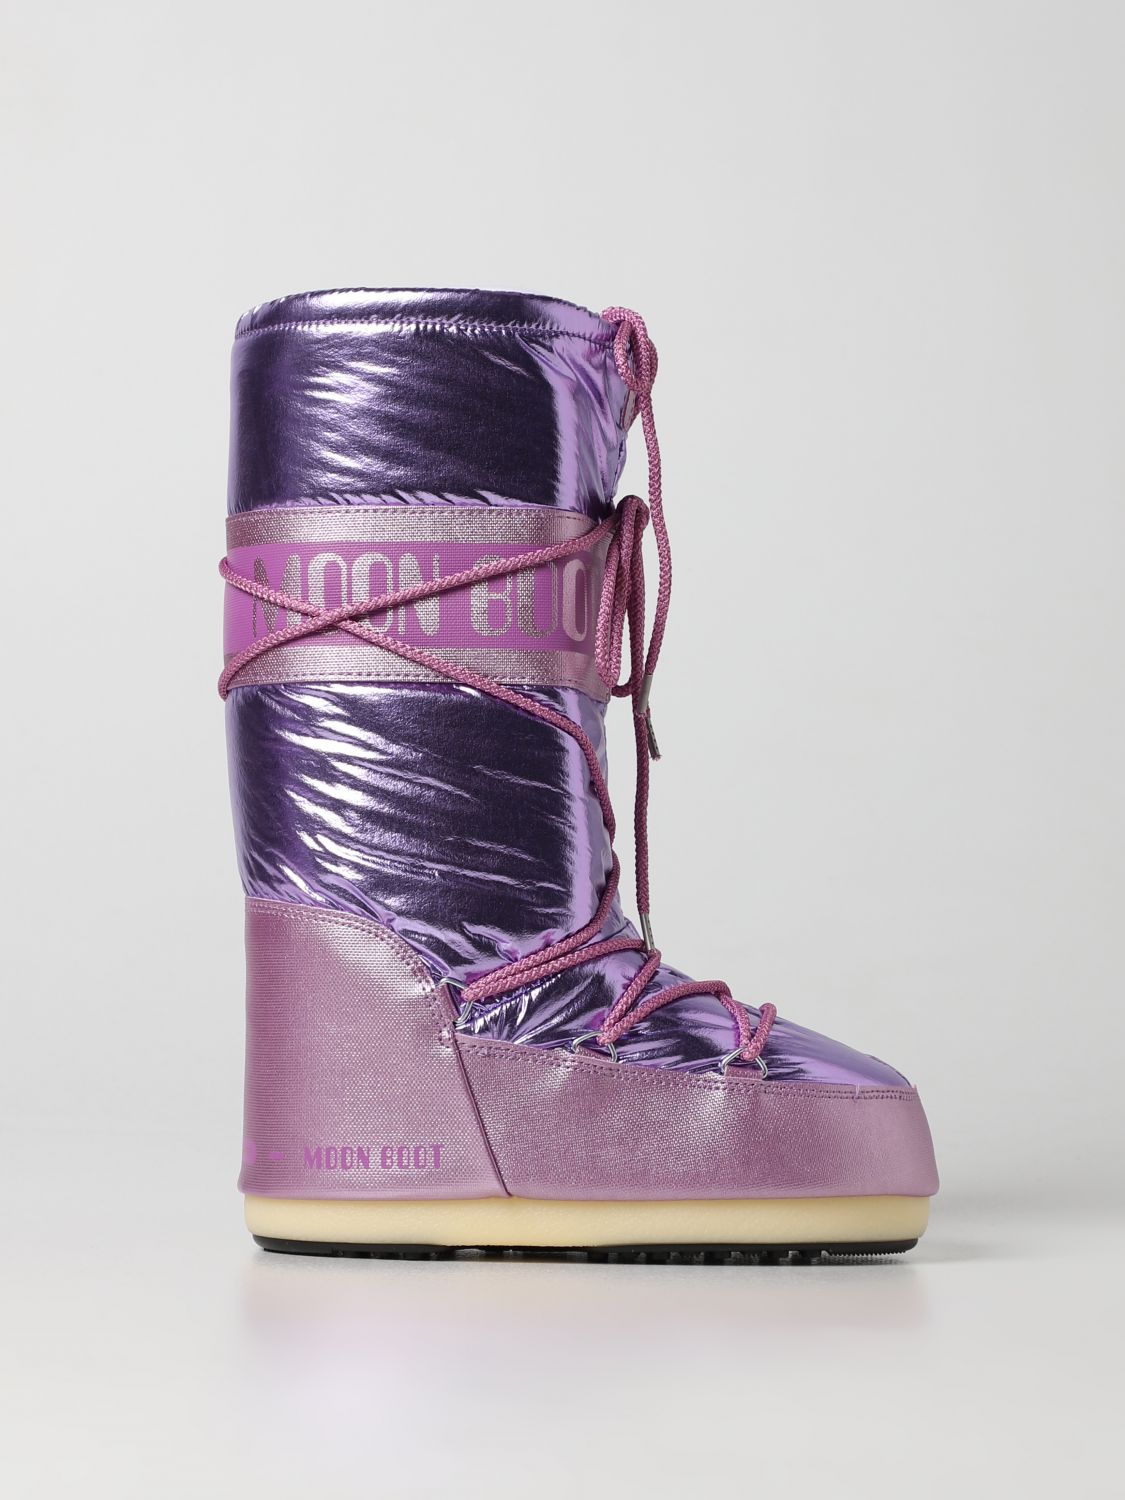 MOON BOOT: Zapatos para niña, | Moon Boot 14027500 en línea en